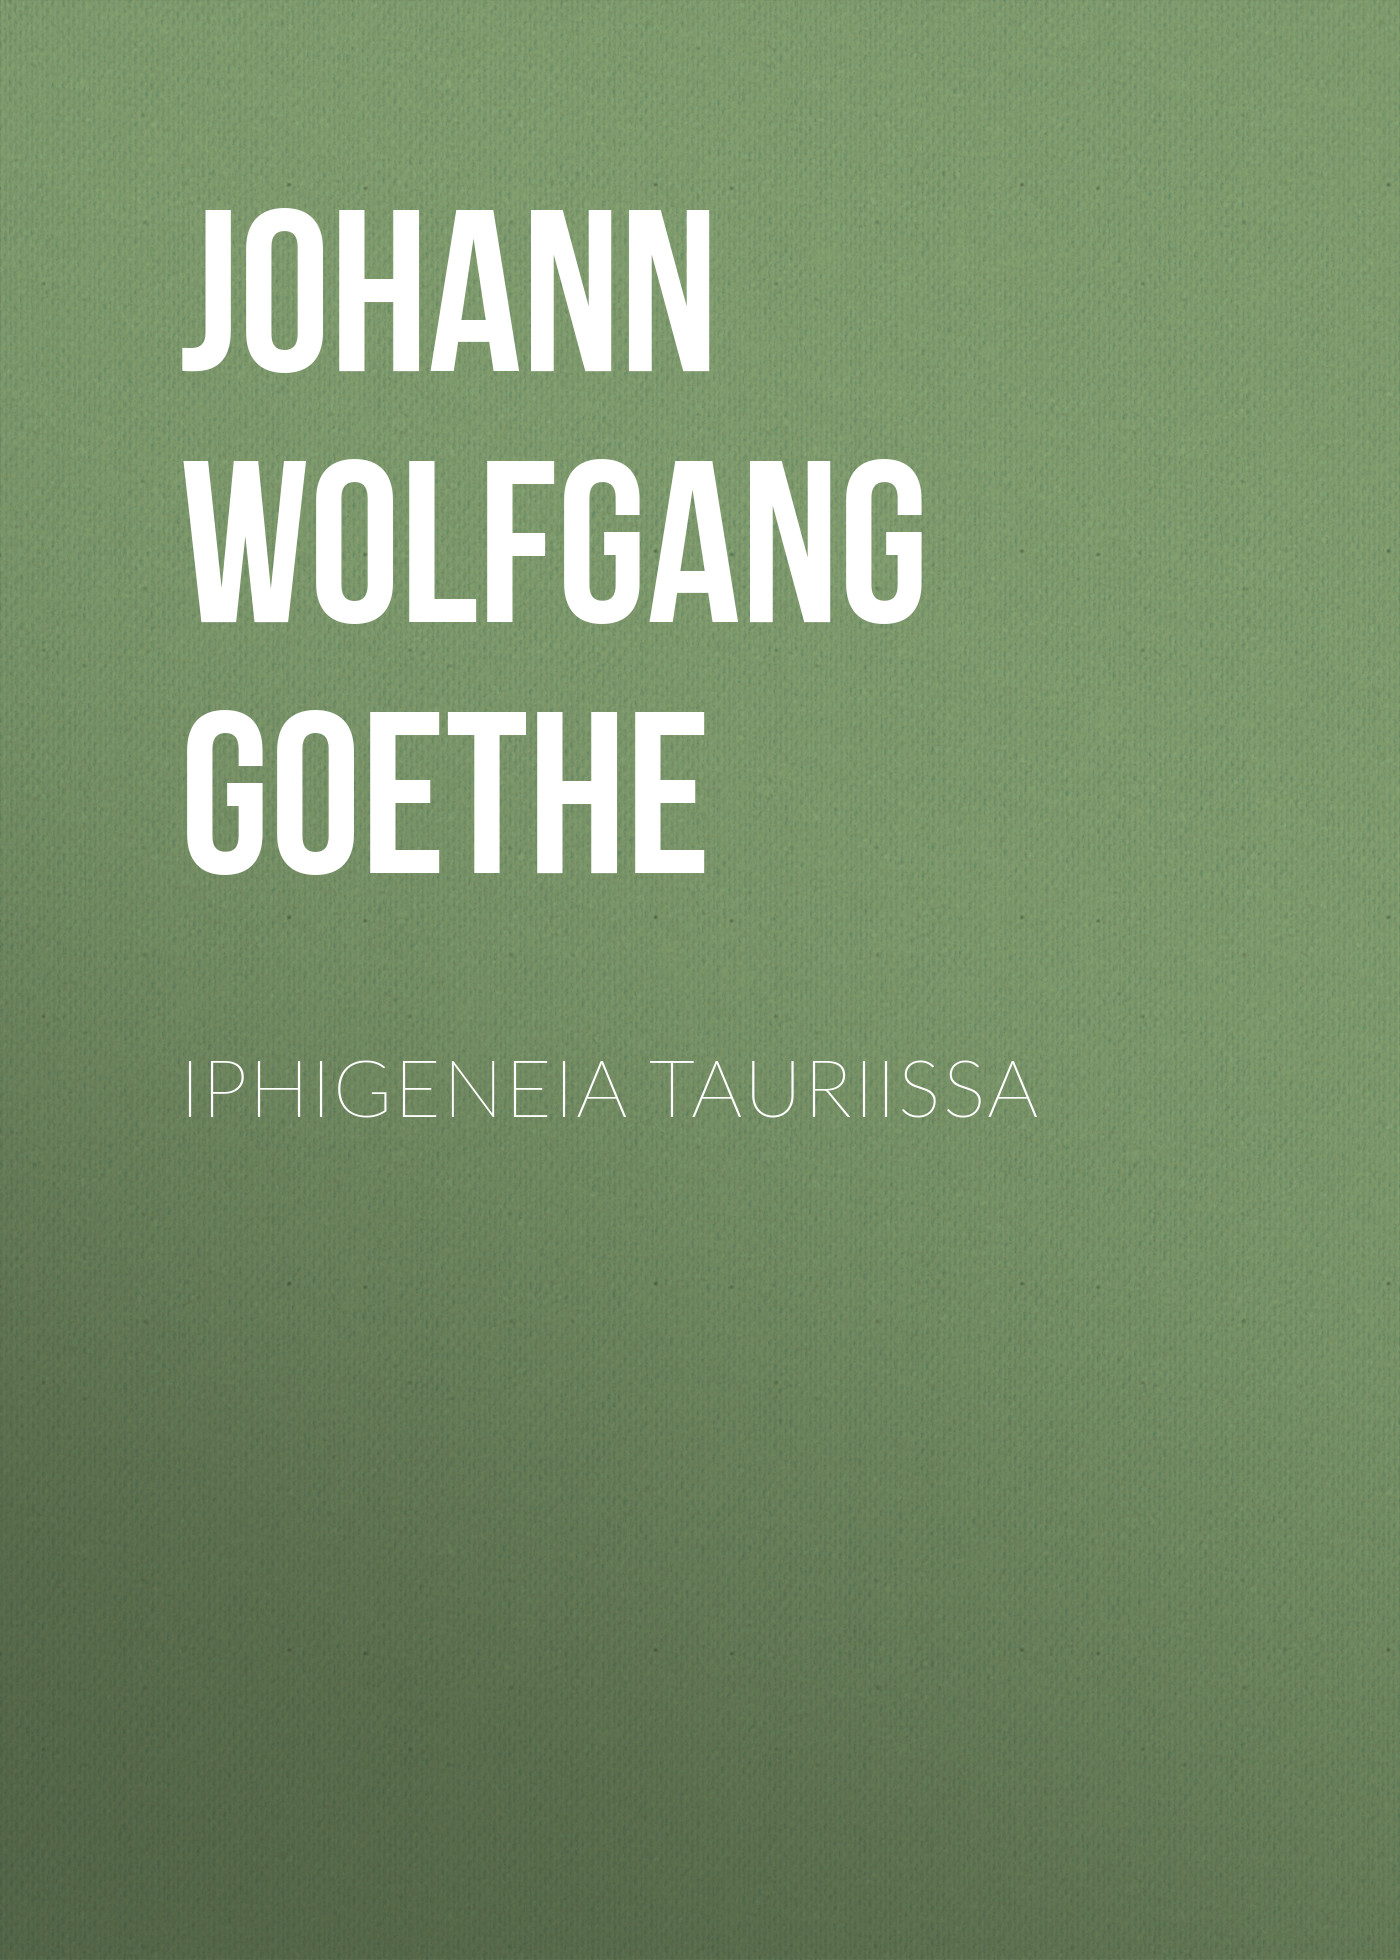 Книга Iphigeneia Tauriissa из серии , созданная Johann von Goethe, может относится к жанру Зарубежная старинная литература, Зарубежная классика. Стоимость электронной книги Iphigeneia Tauriissa с идентификатором 24938213 составляет 0 руб.